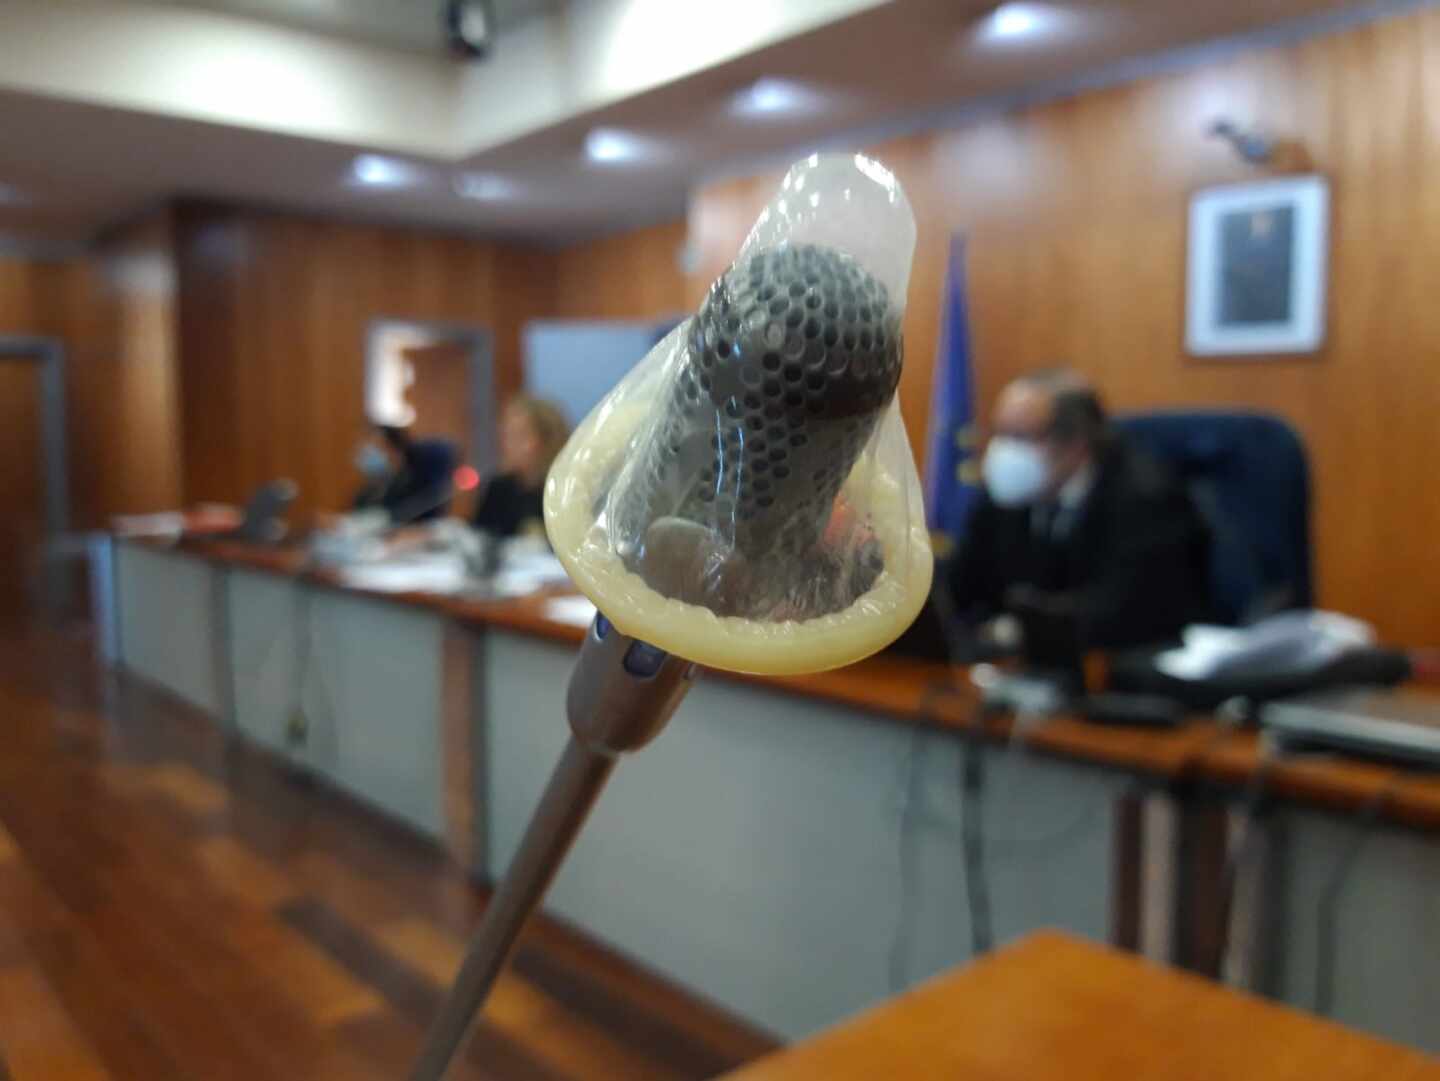 Un fiscal de Málaga denuncia la colocación de un preservativo en su micrófono durante el receso de un juicio